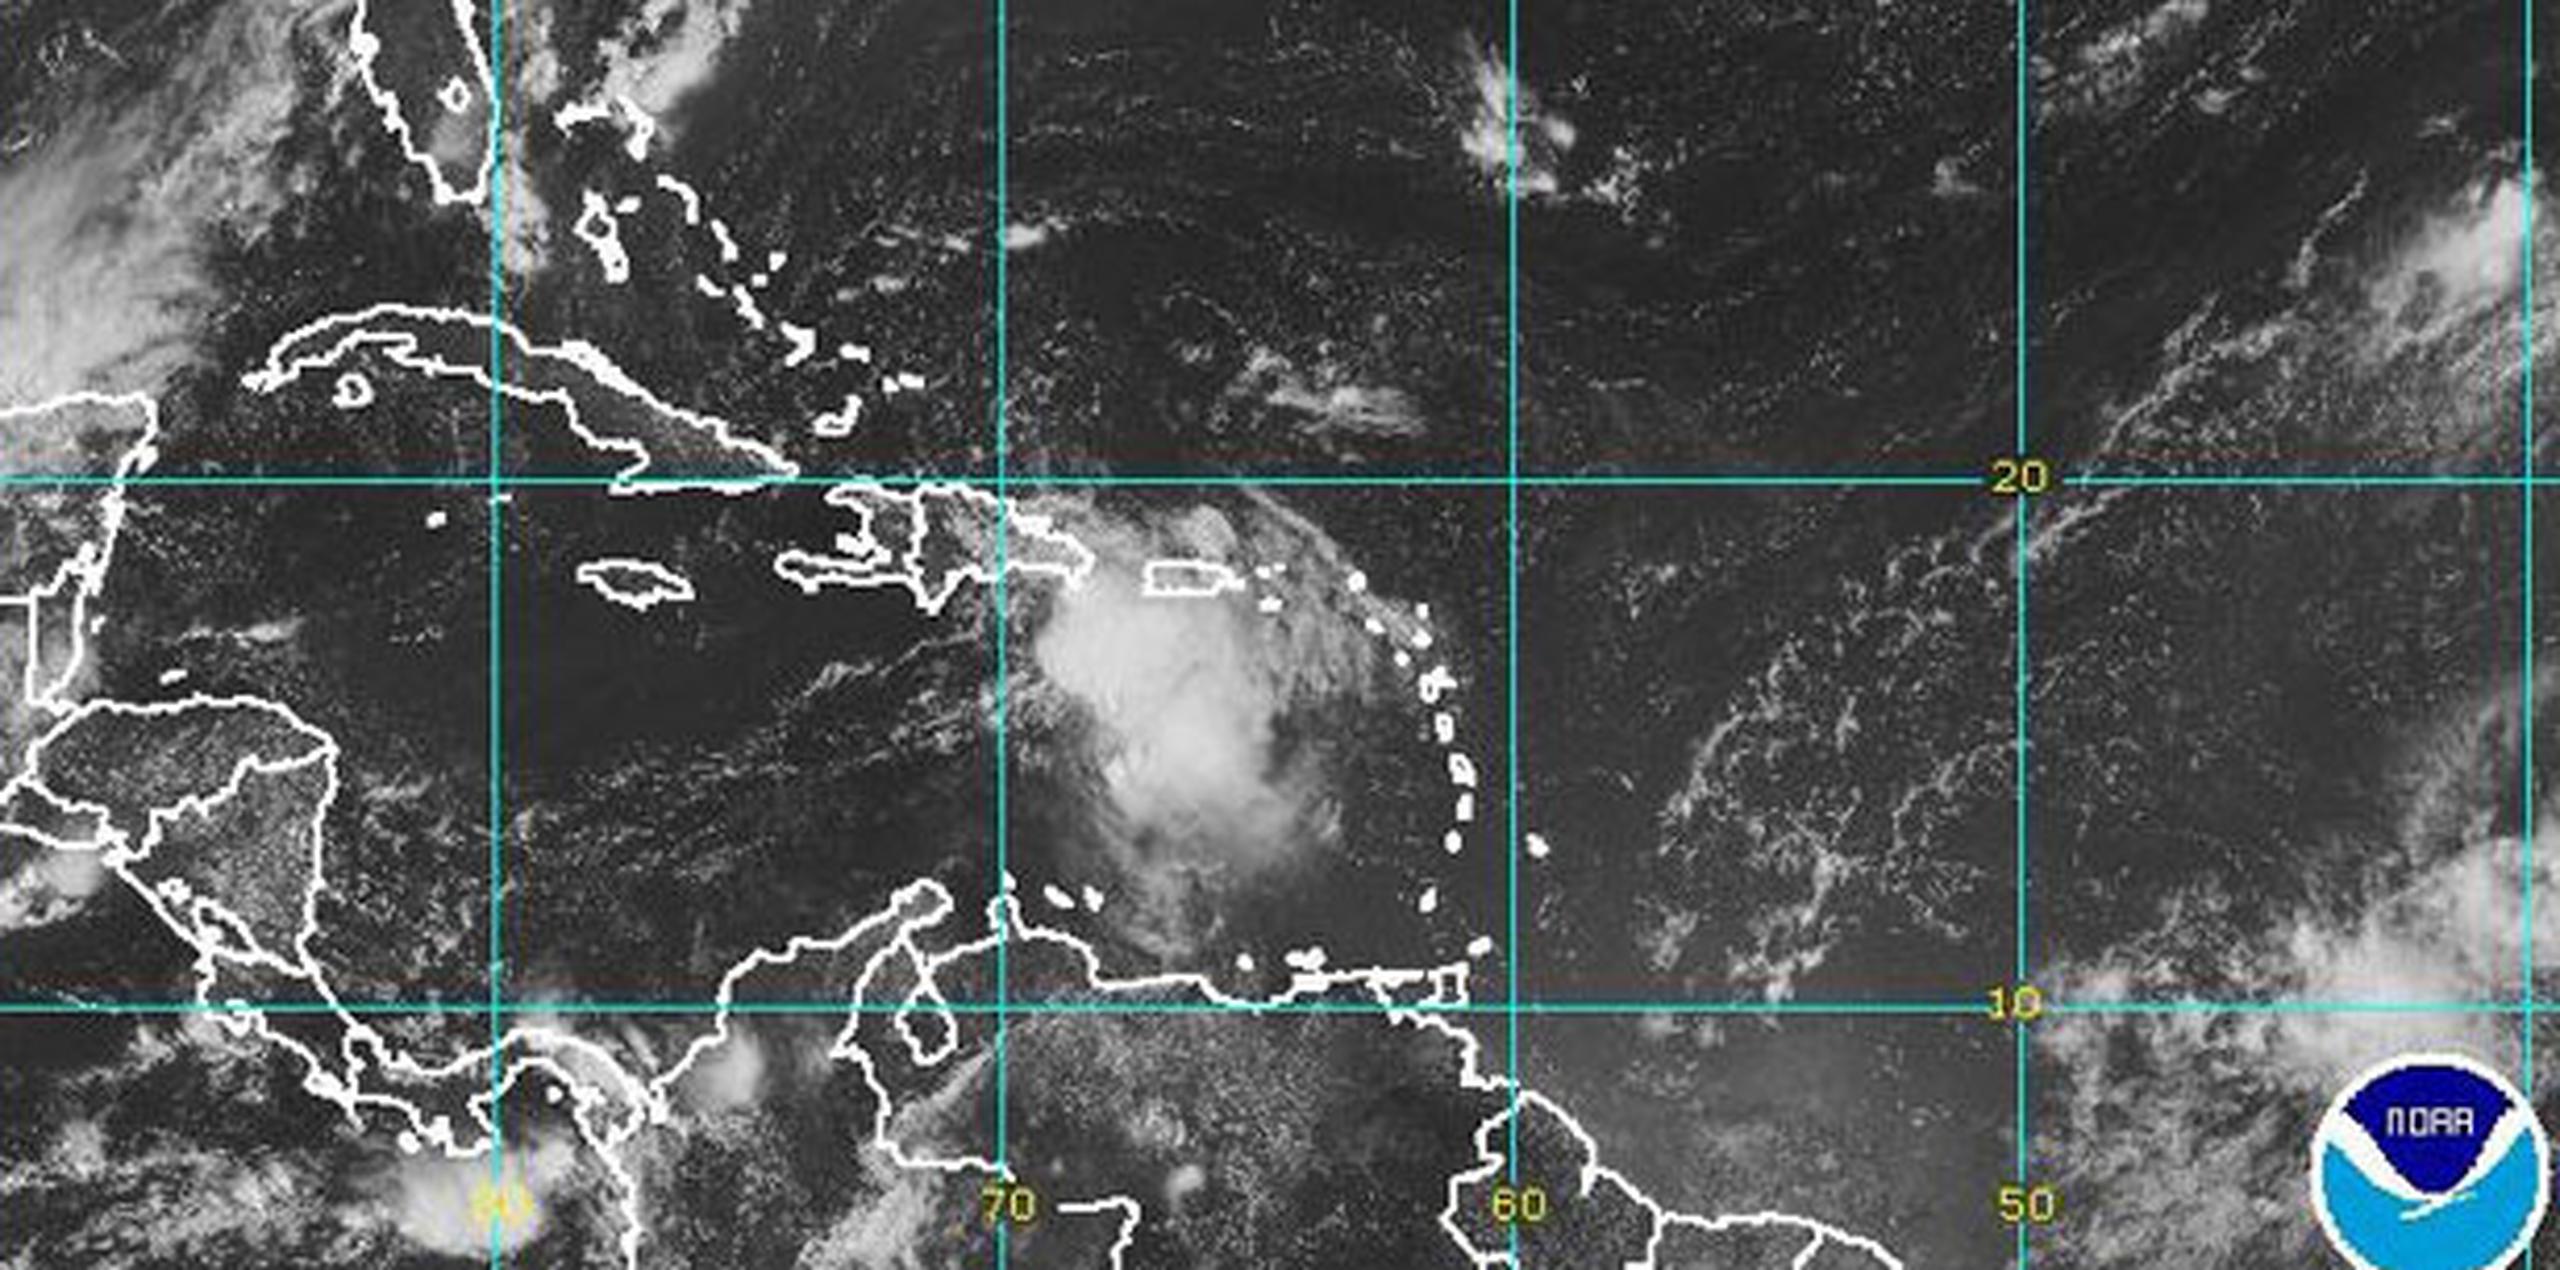 Las condiciones de tormenta en Puerto Rico continuarán por las próximas horas, advierte el informe. (Archivo)